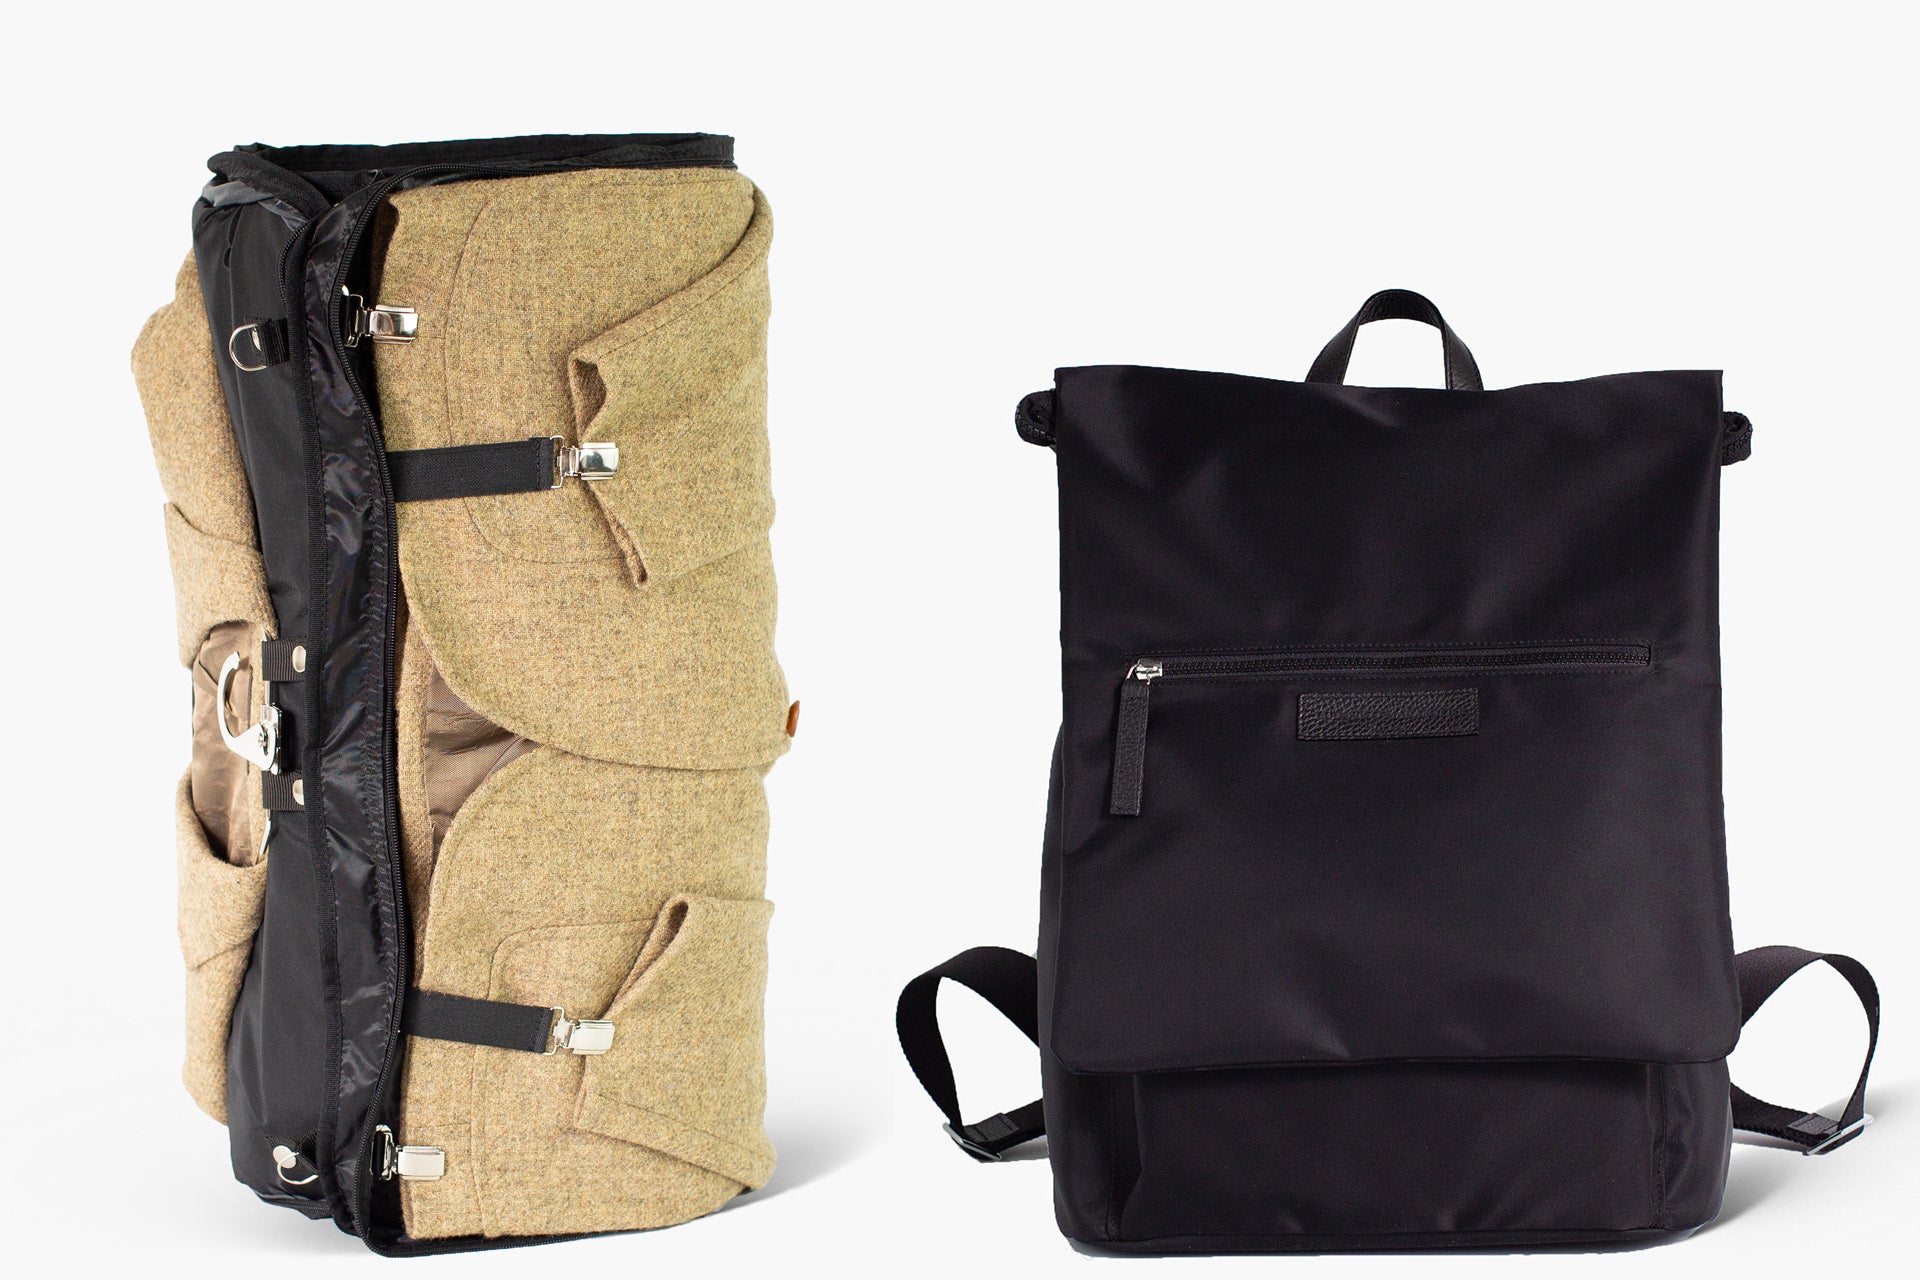 Carlo - Black Nylon/Jacquard - Expandable Garment Backpack